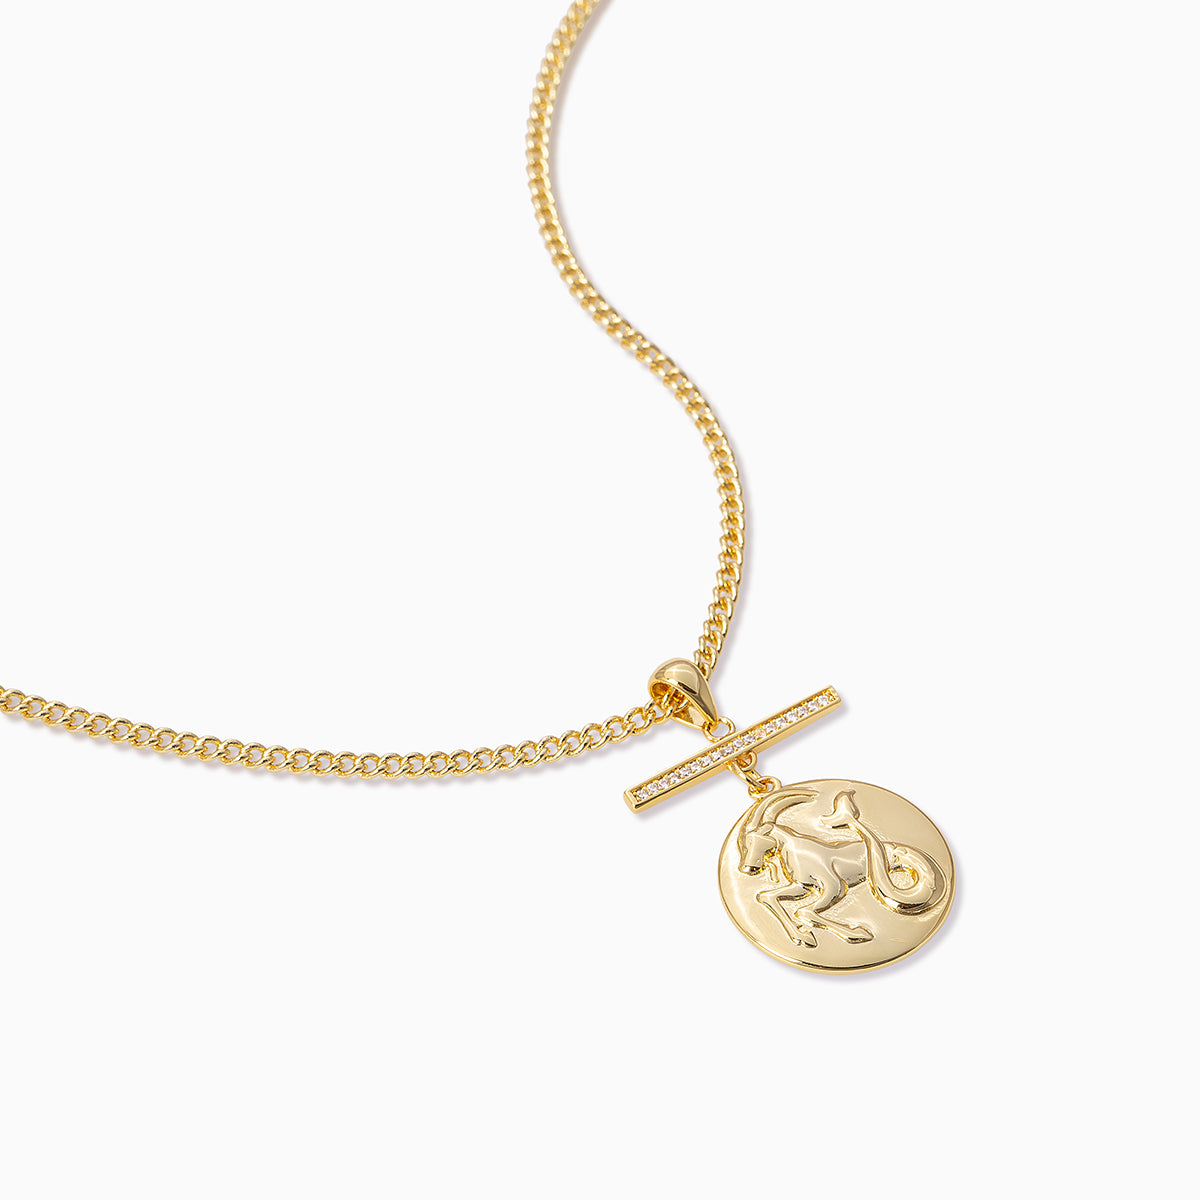 Zodiac Pendant Necklace | Gold | Product Detail Image | Uncommon James